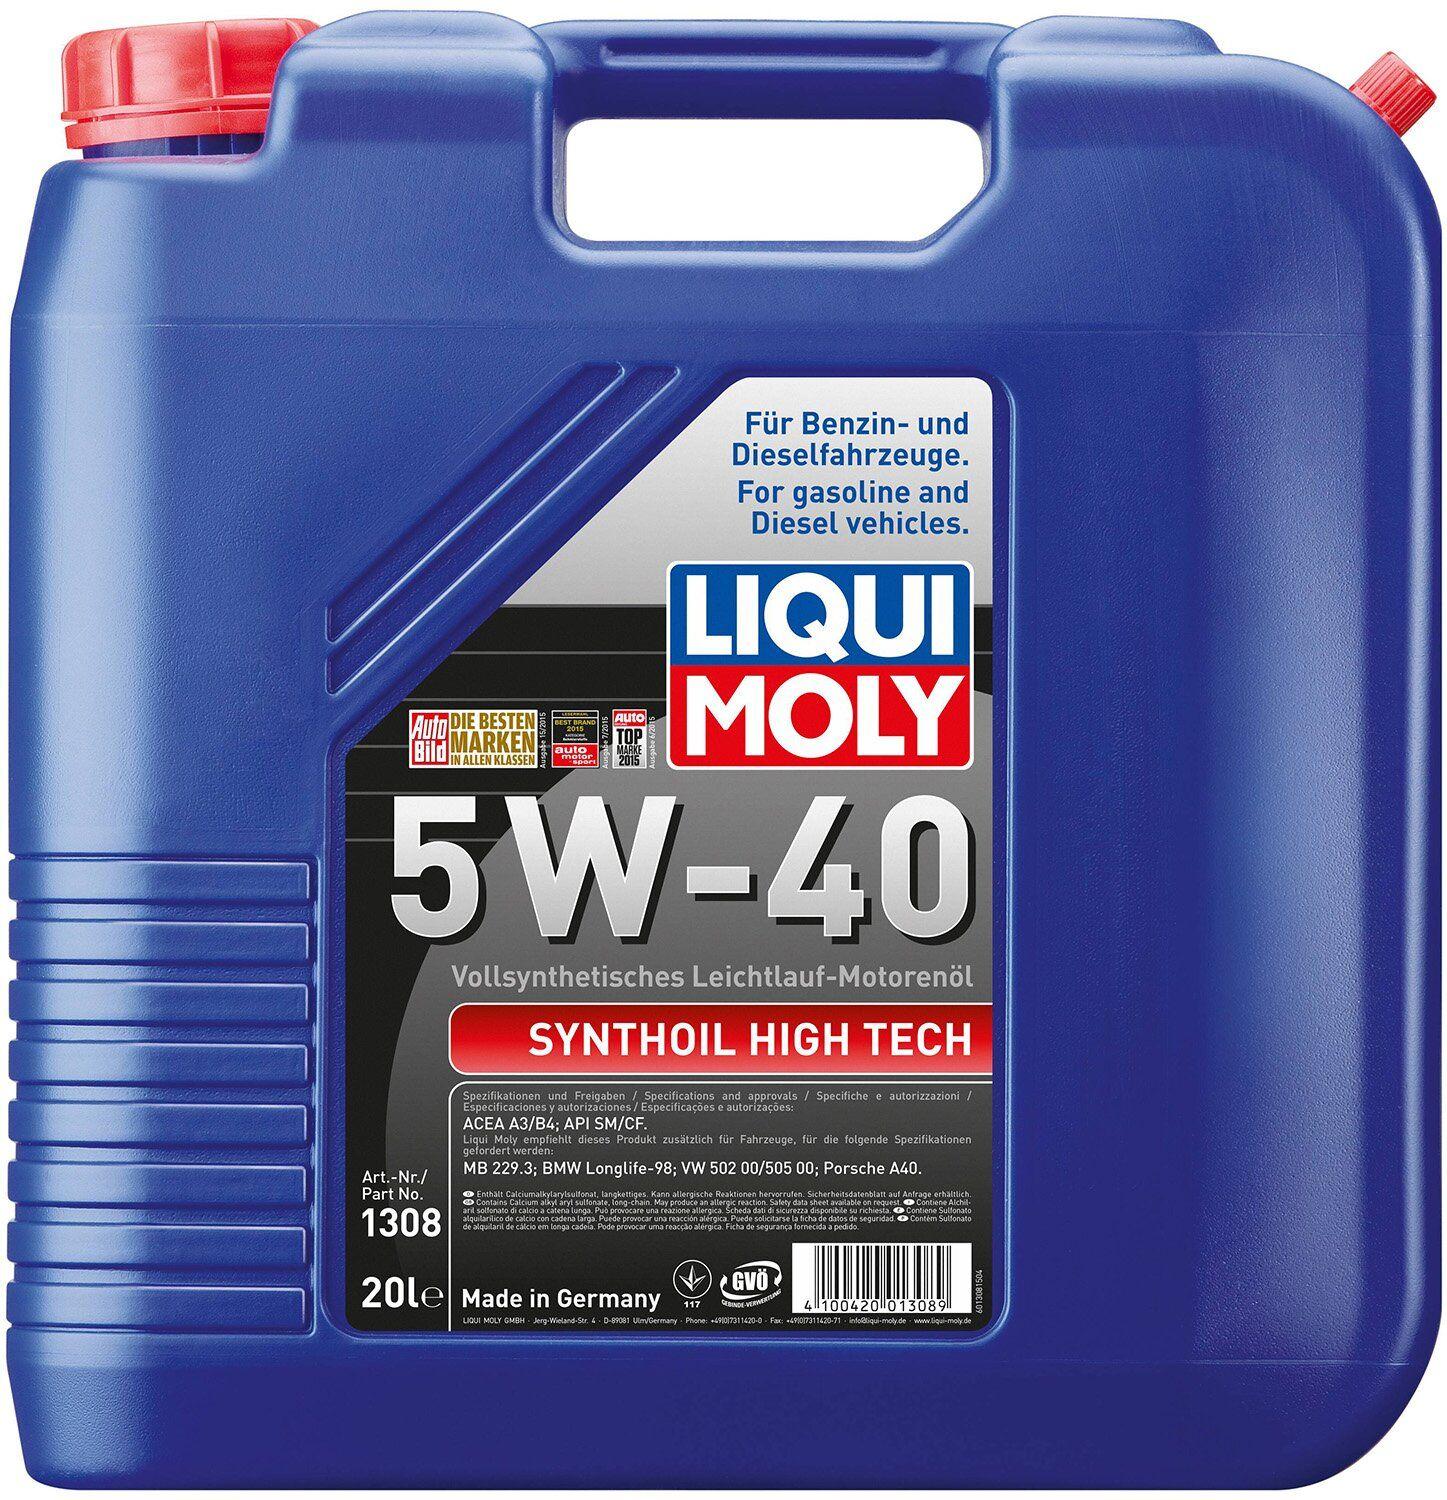 Моторное масло Liqui Moly Synthoil High Tech 5W-40, 20 литров (1308)